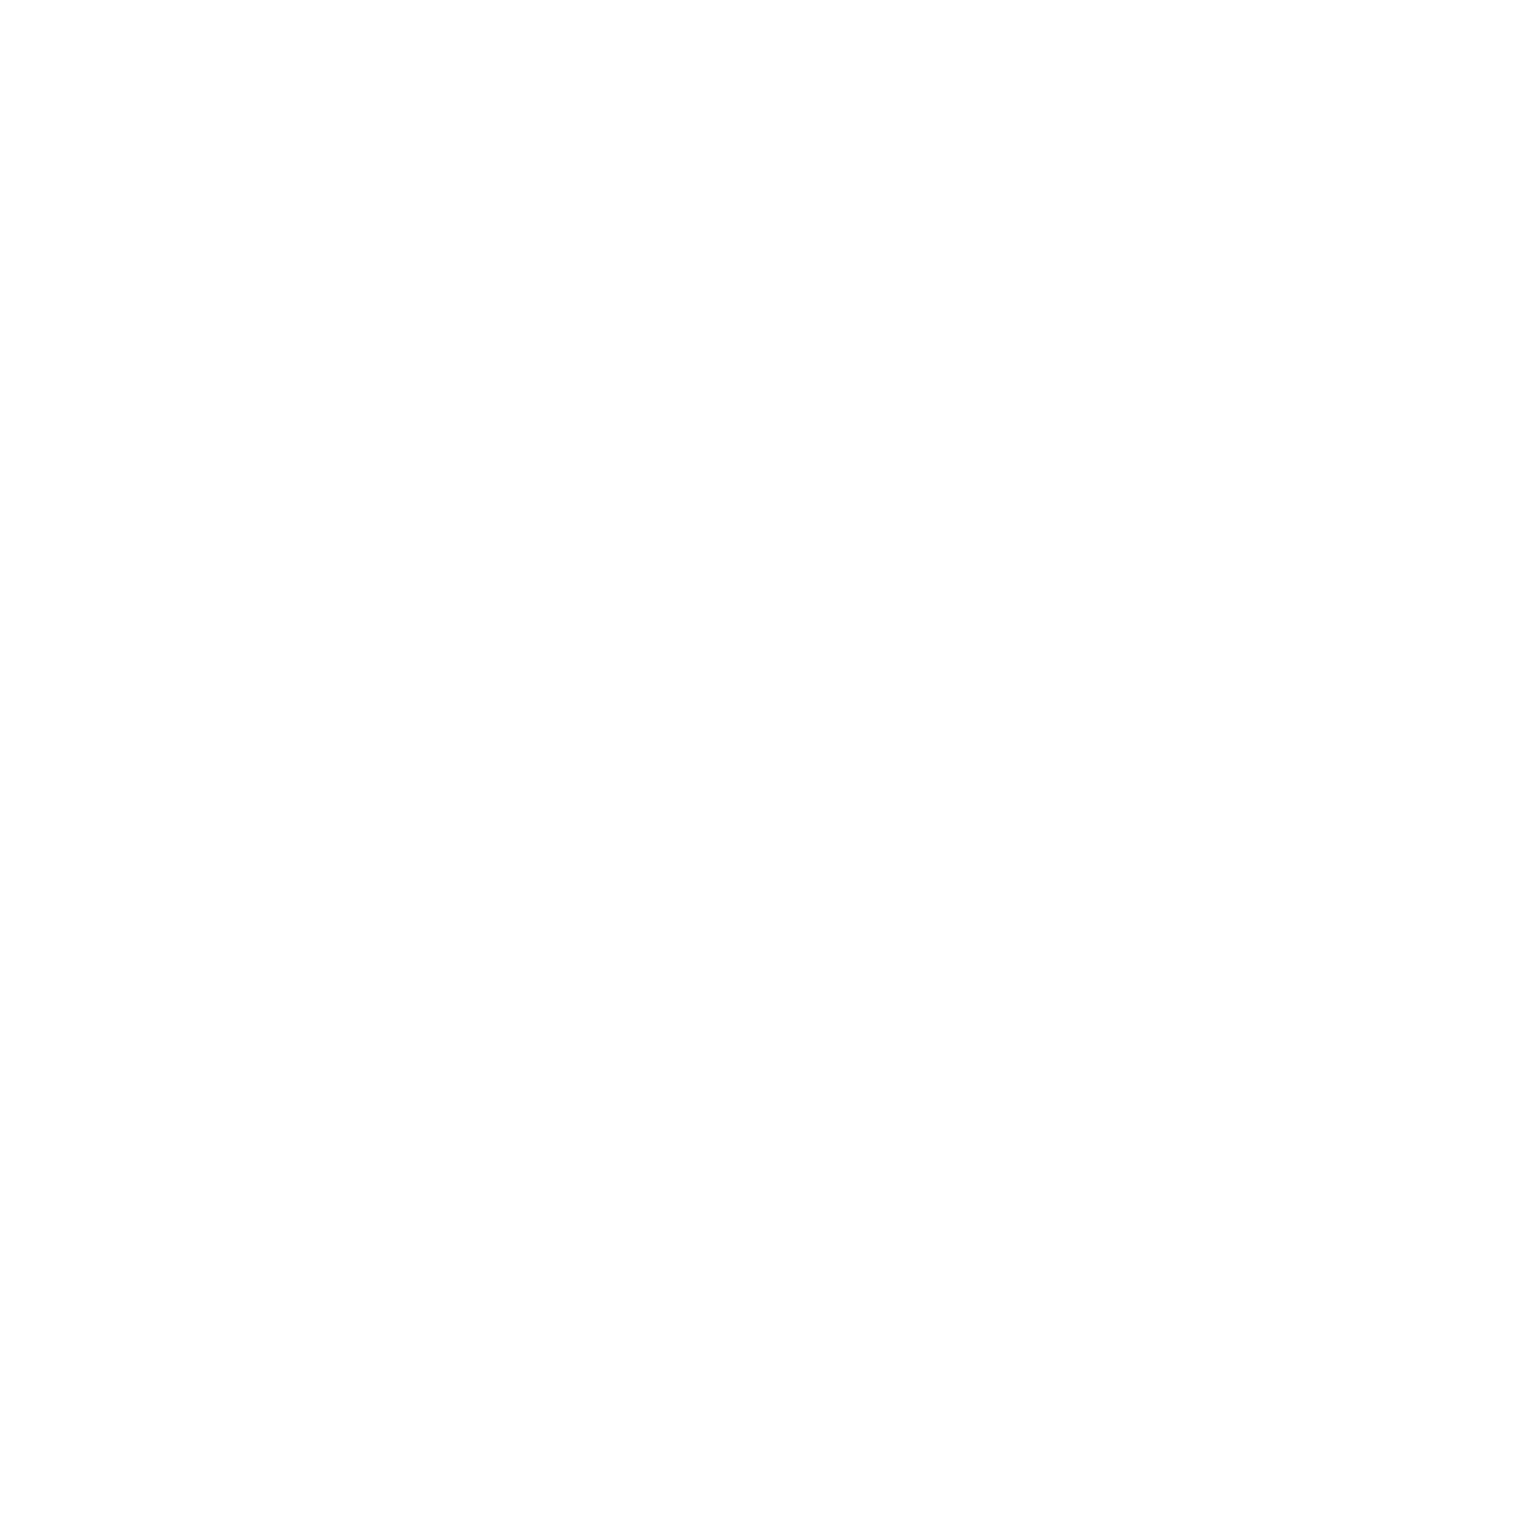 MoneyLion logo pour fonds sombres (PNG transparent)